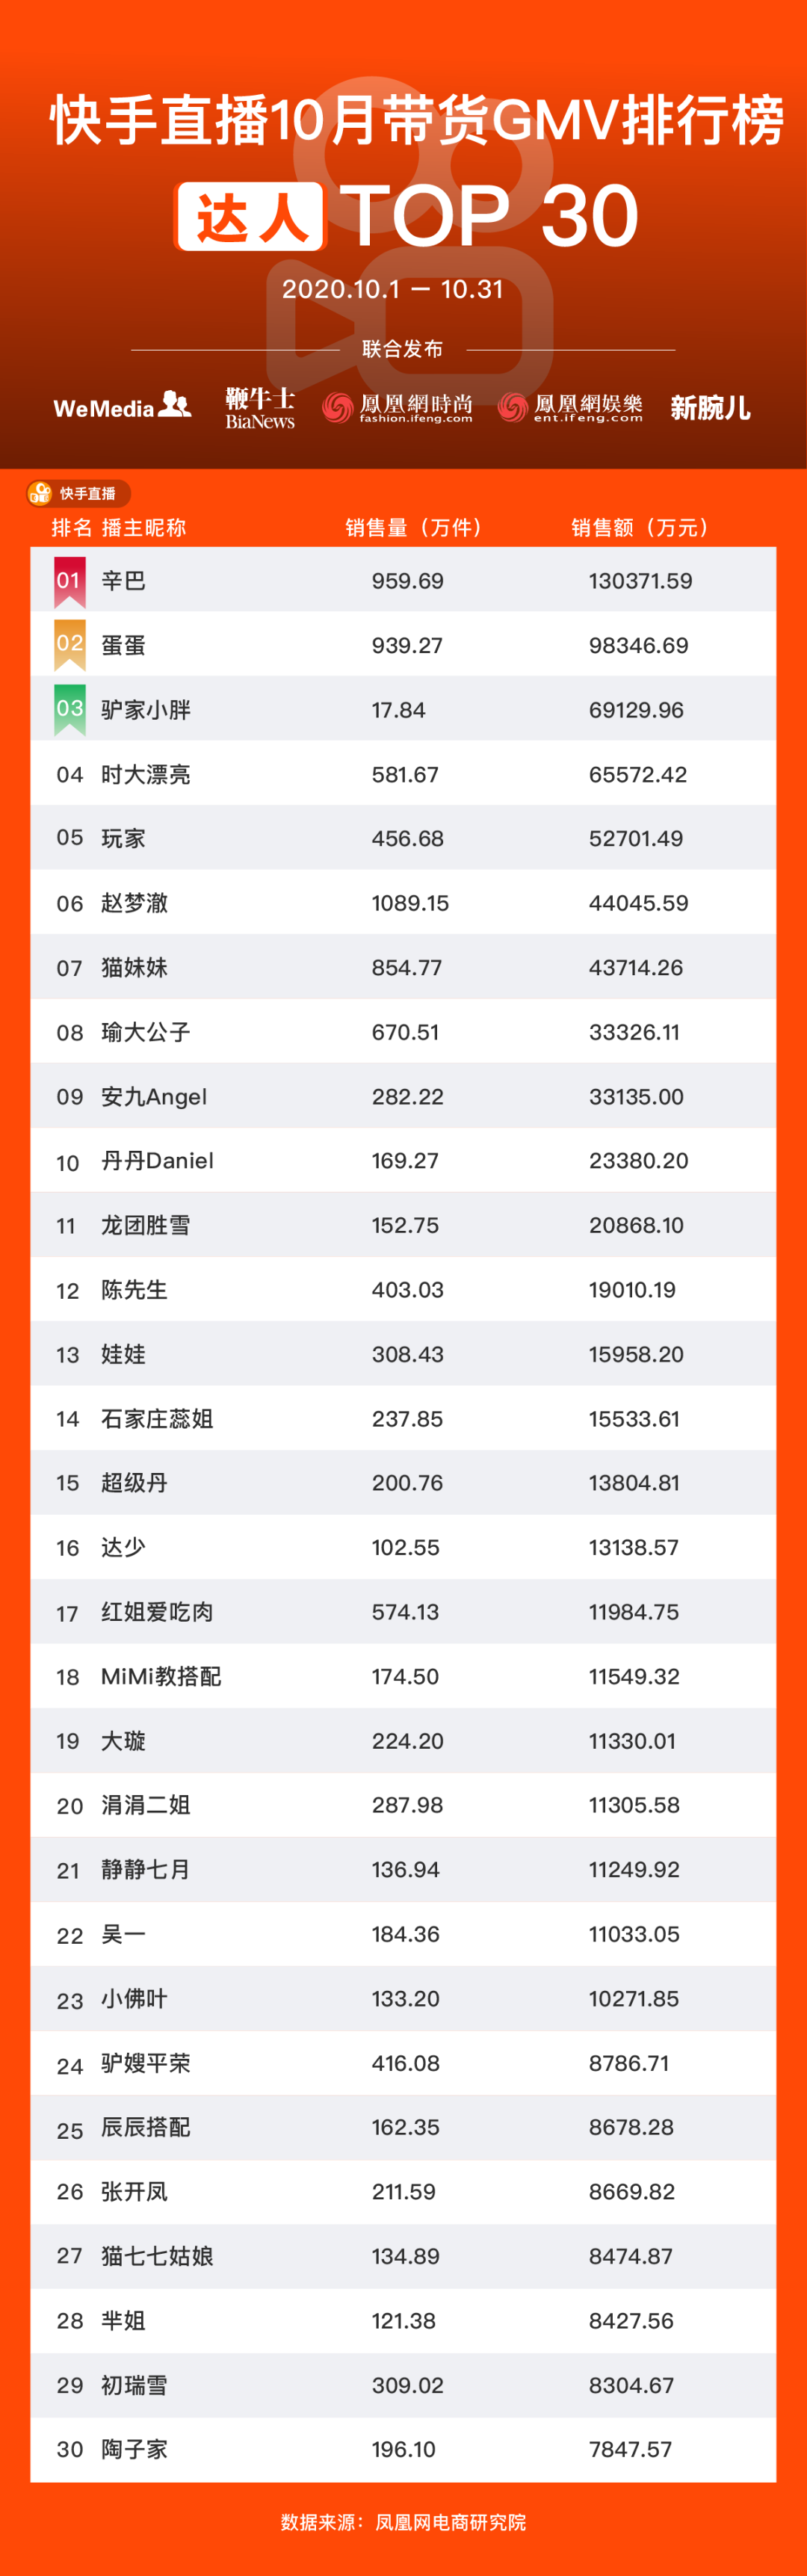 淘宝抖音快手主播GMV月榜名单:薇娅李佳琦破50亿、辛巴持续霸榜